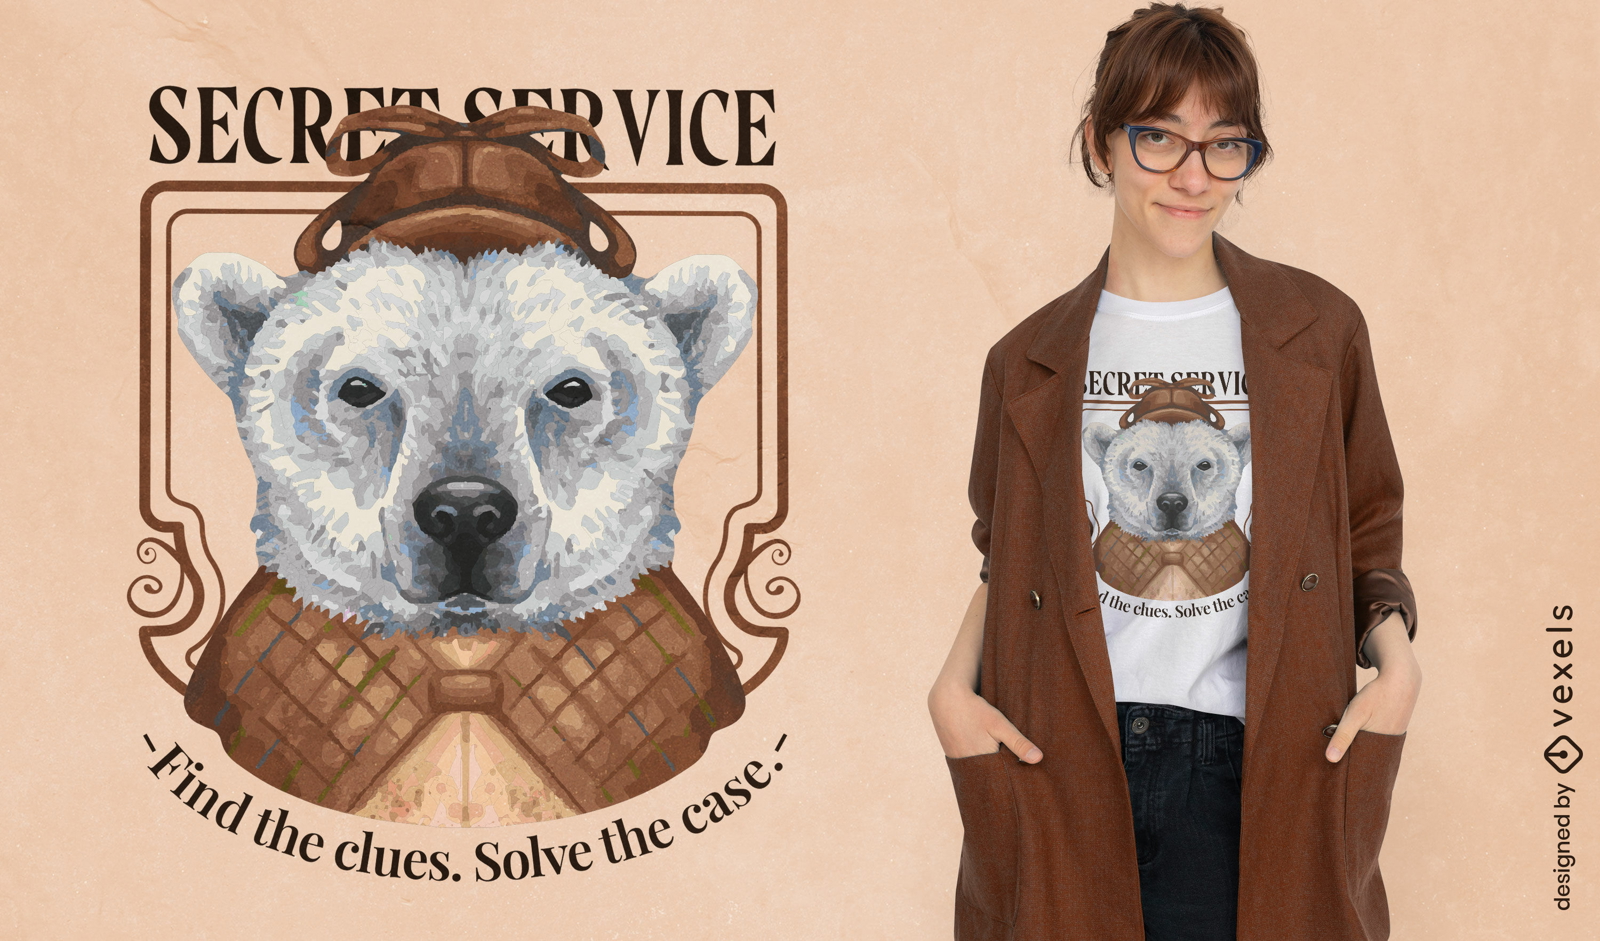 Dise?o de camiseta de oso polar del servicio secreto.